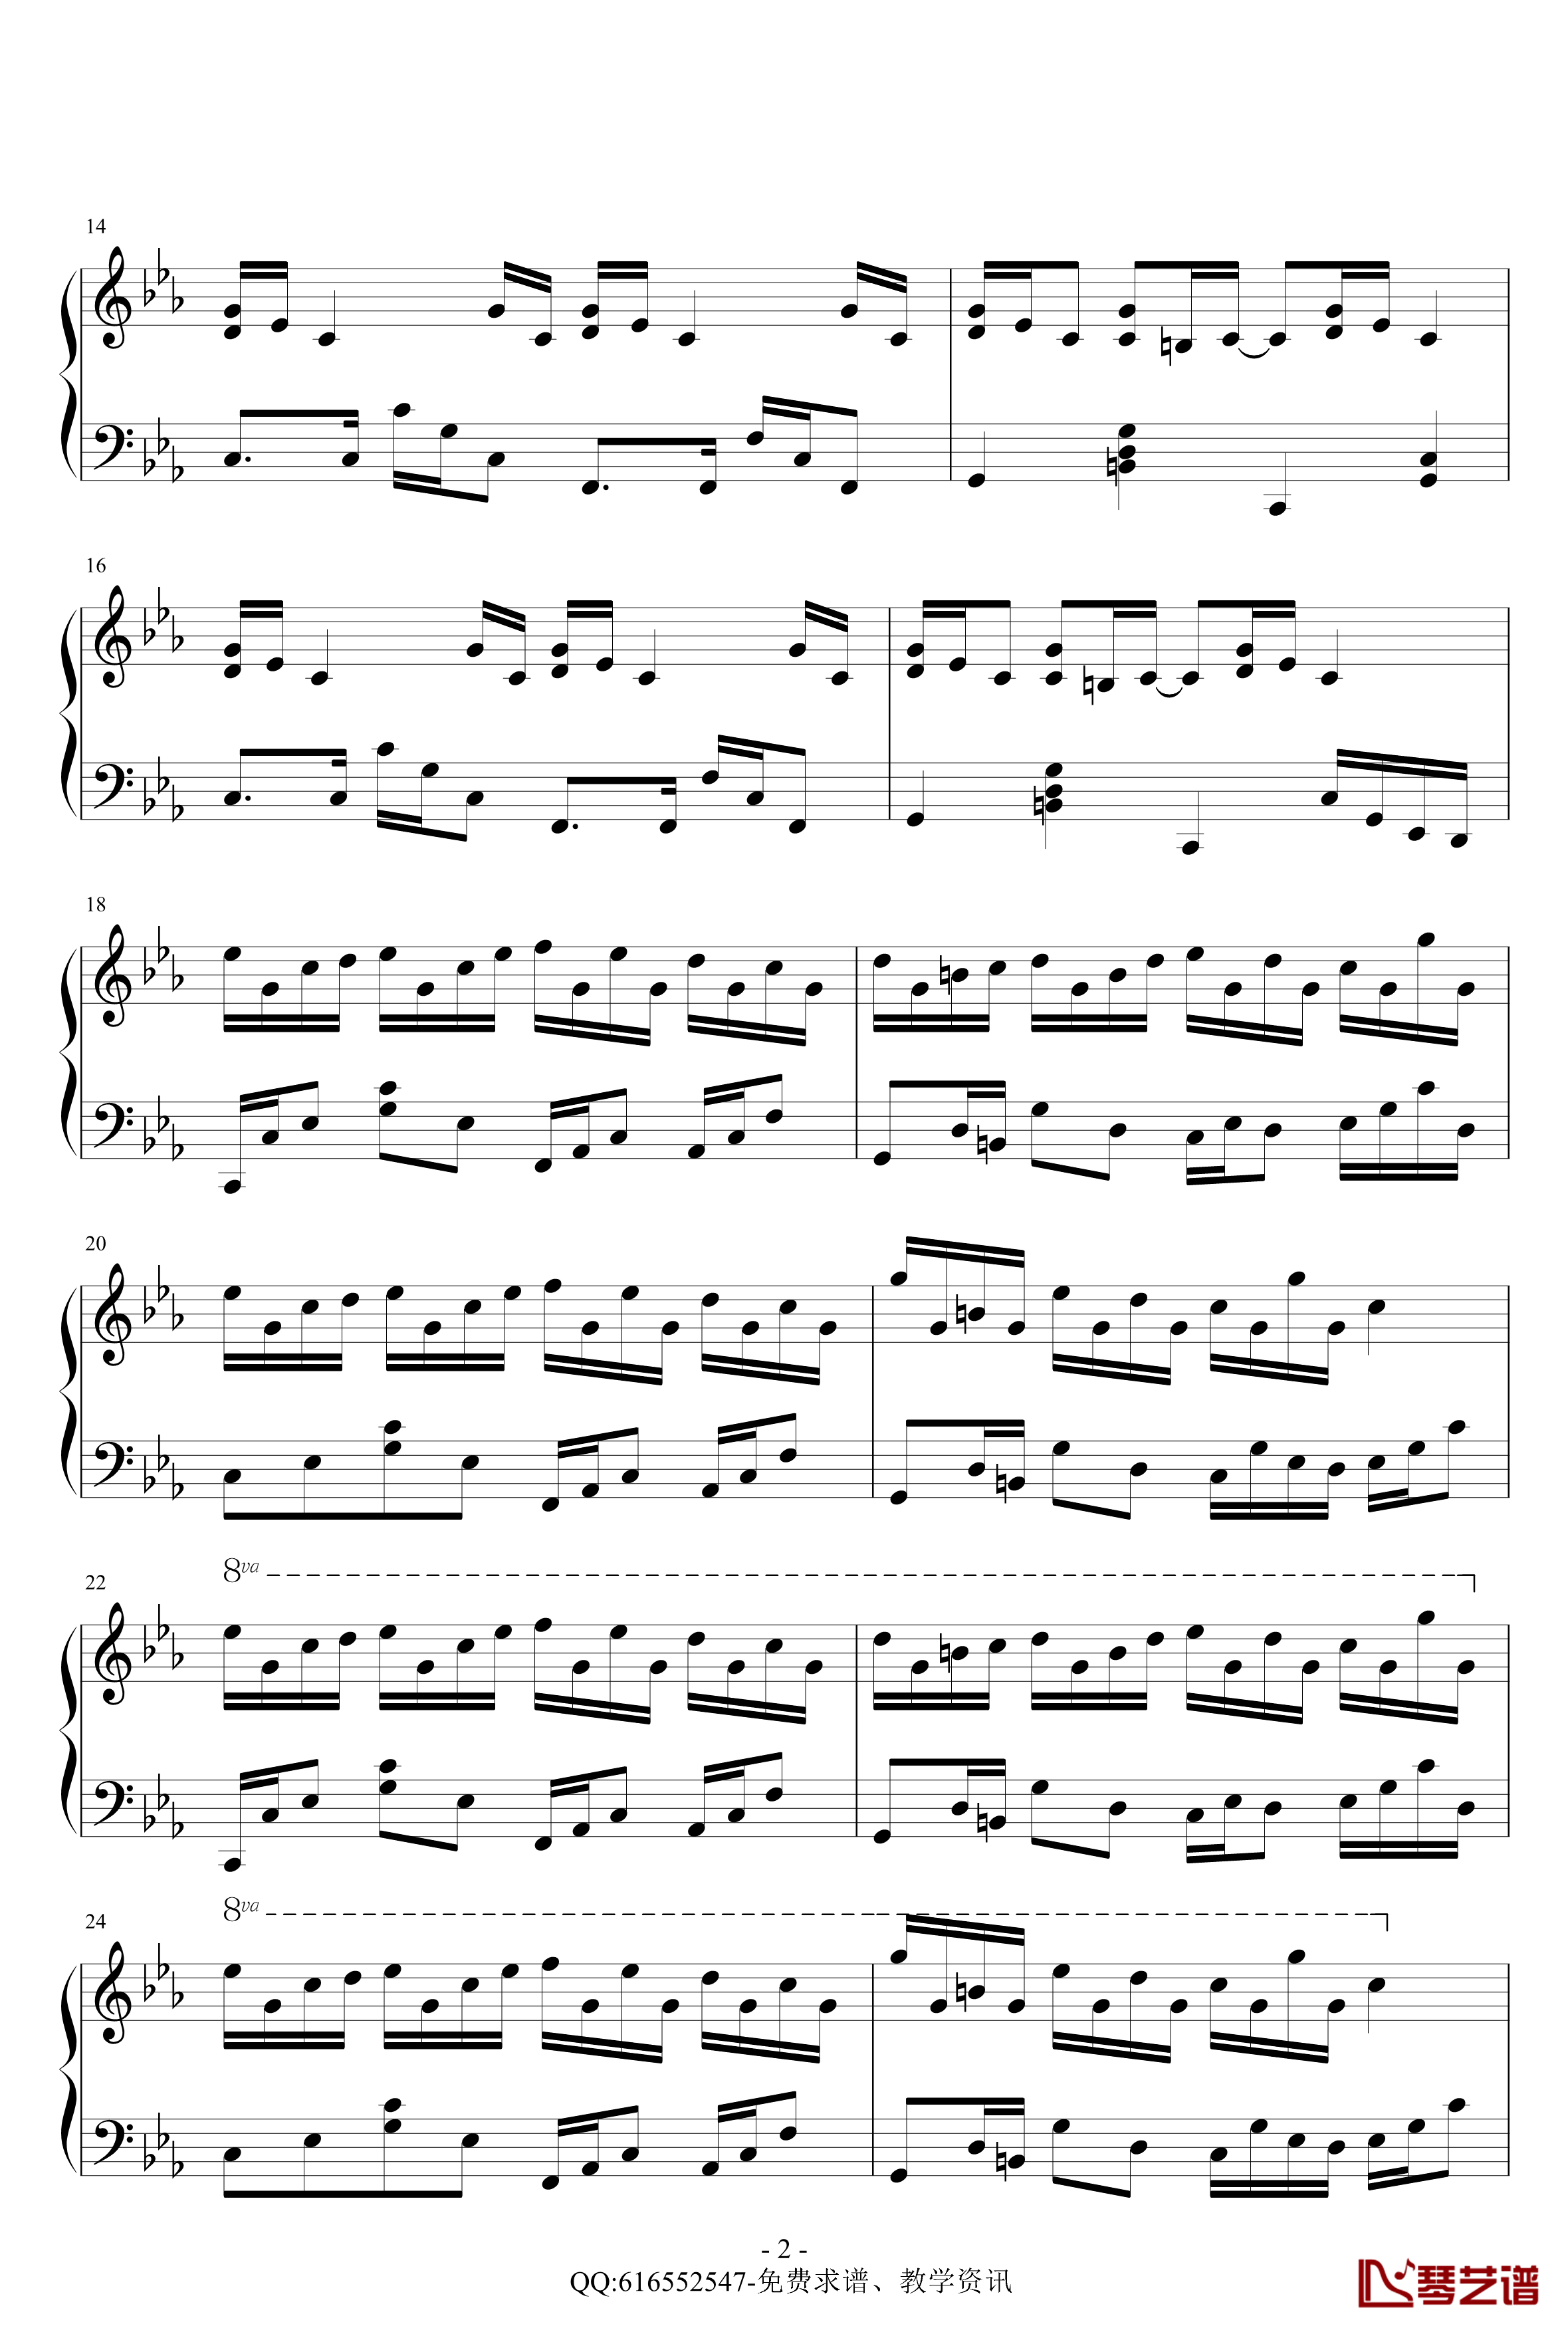 克罗地亚狂想曲钢琴谱-精致版-金龙鱼170427-马克西姆-Maksim·Mrvica2